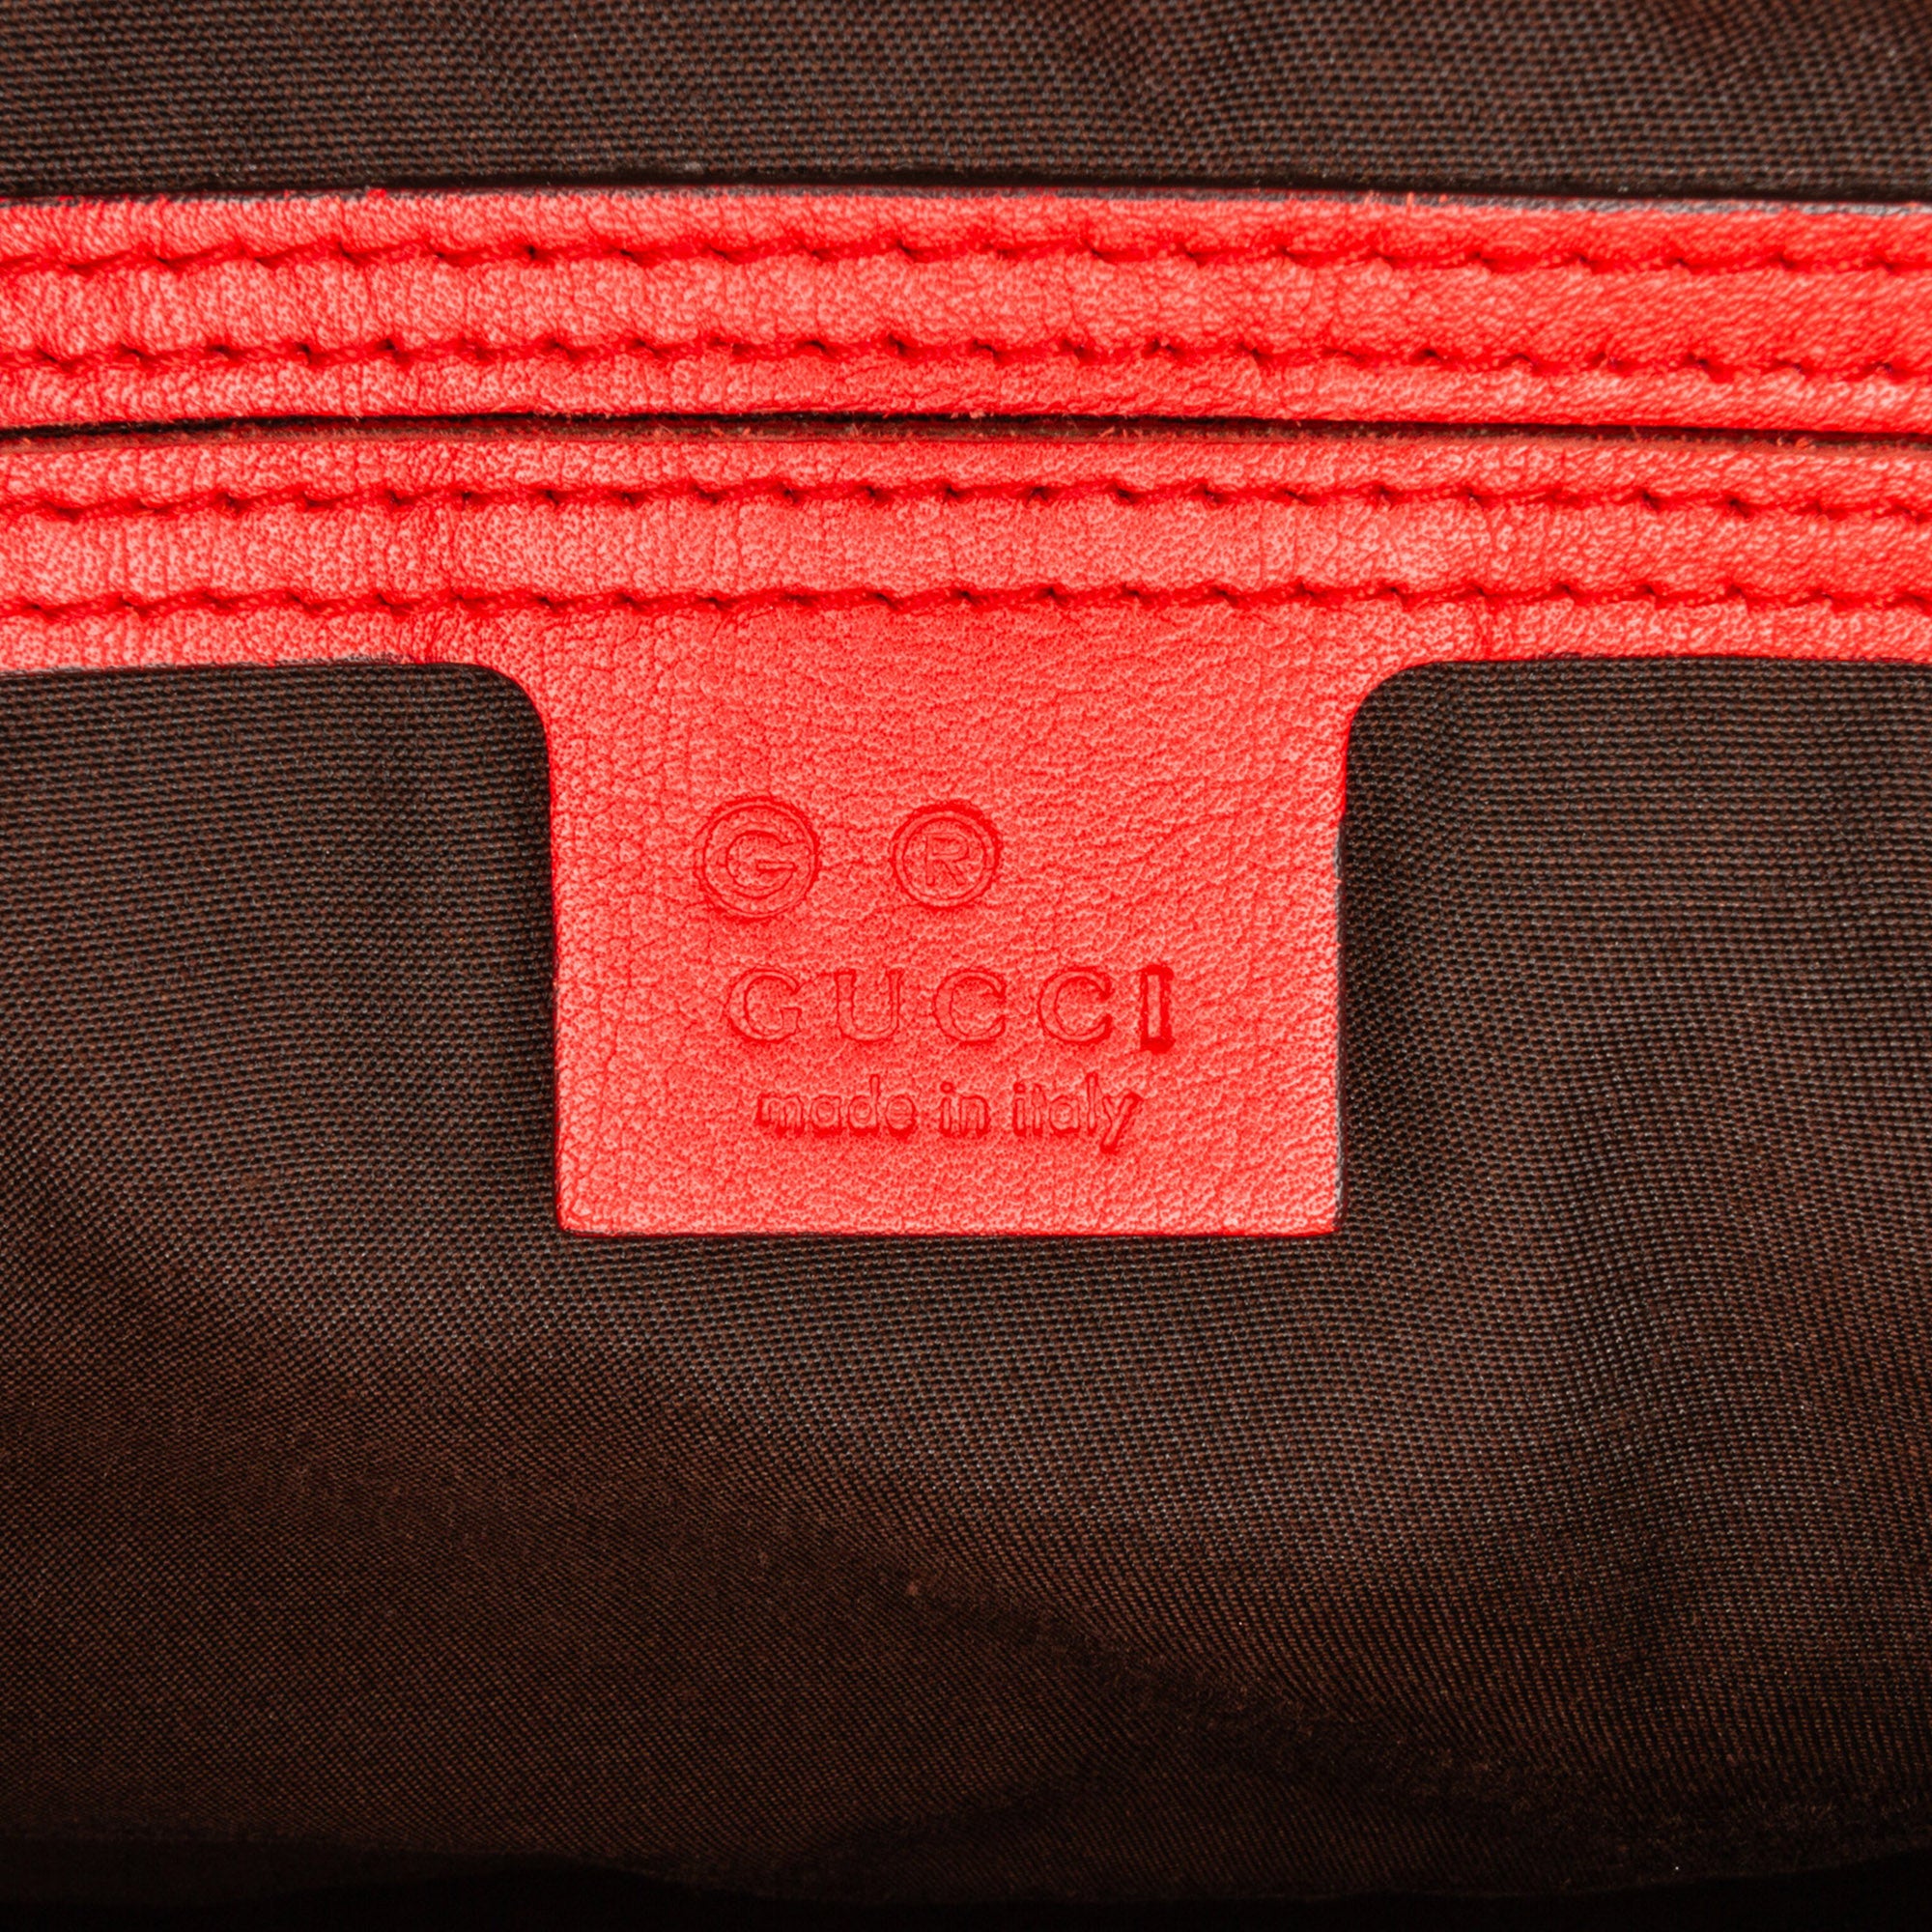 Gucci, Embossed Leather Joy Guccissima Boston Bag, signa…